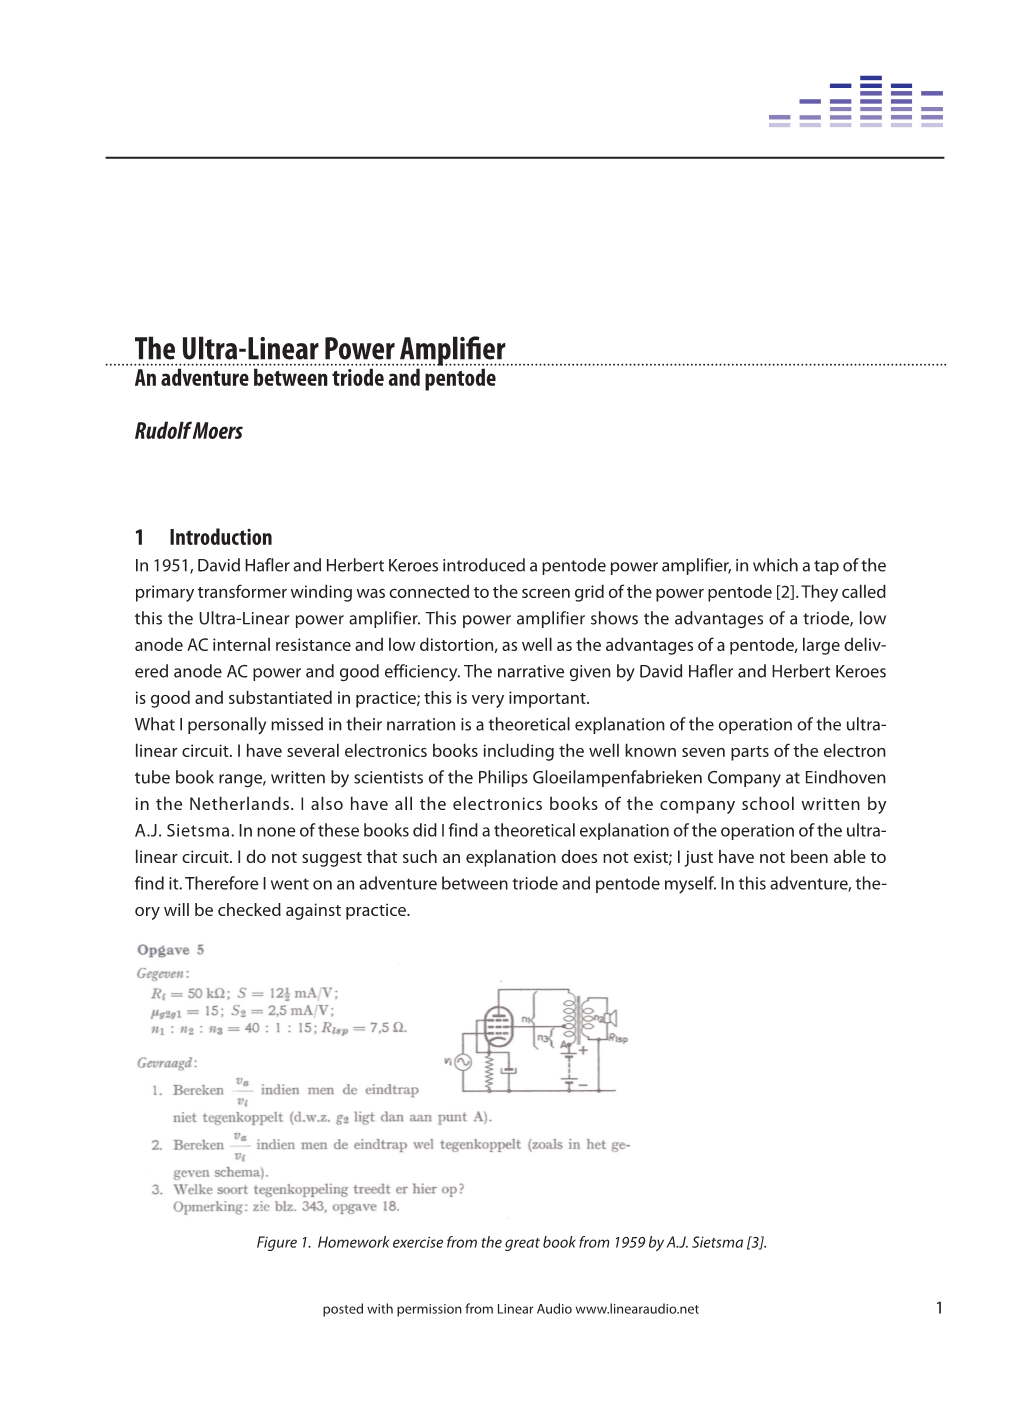 The Ultra-Linear Power Amplifier